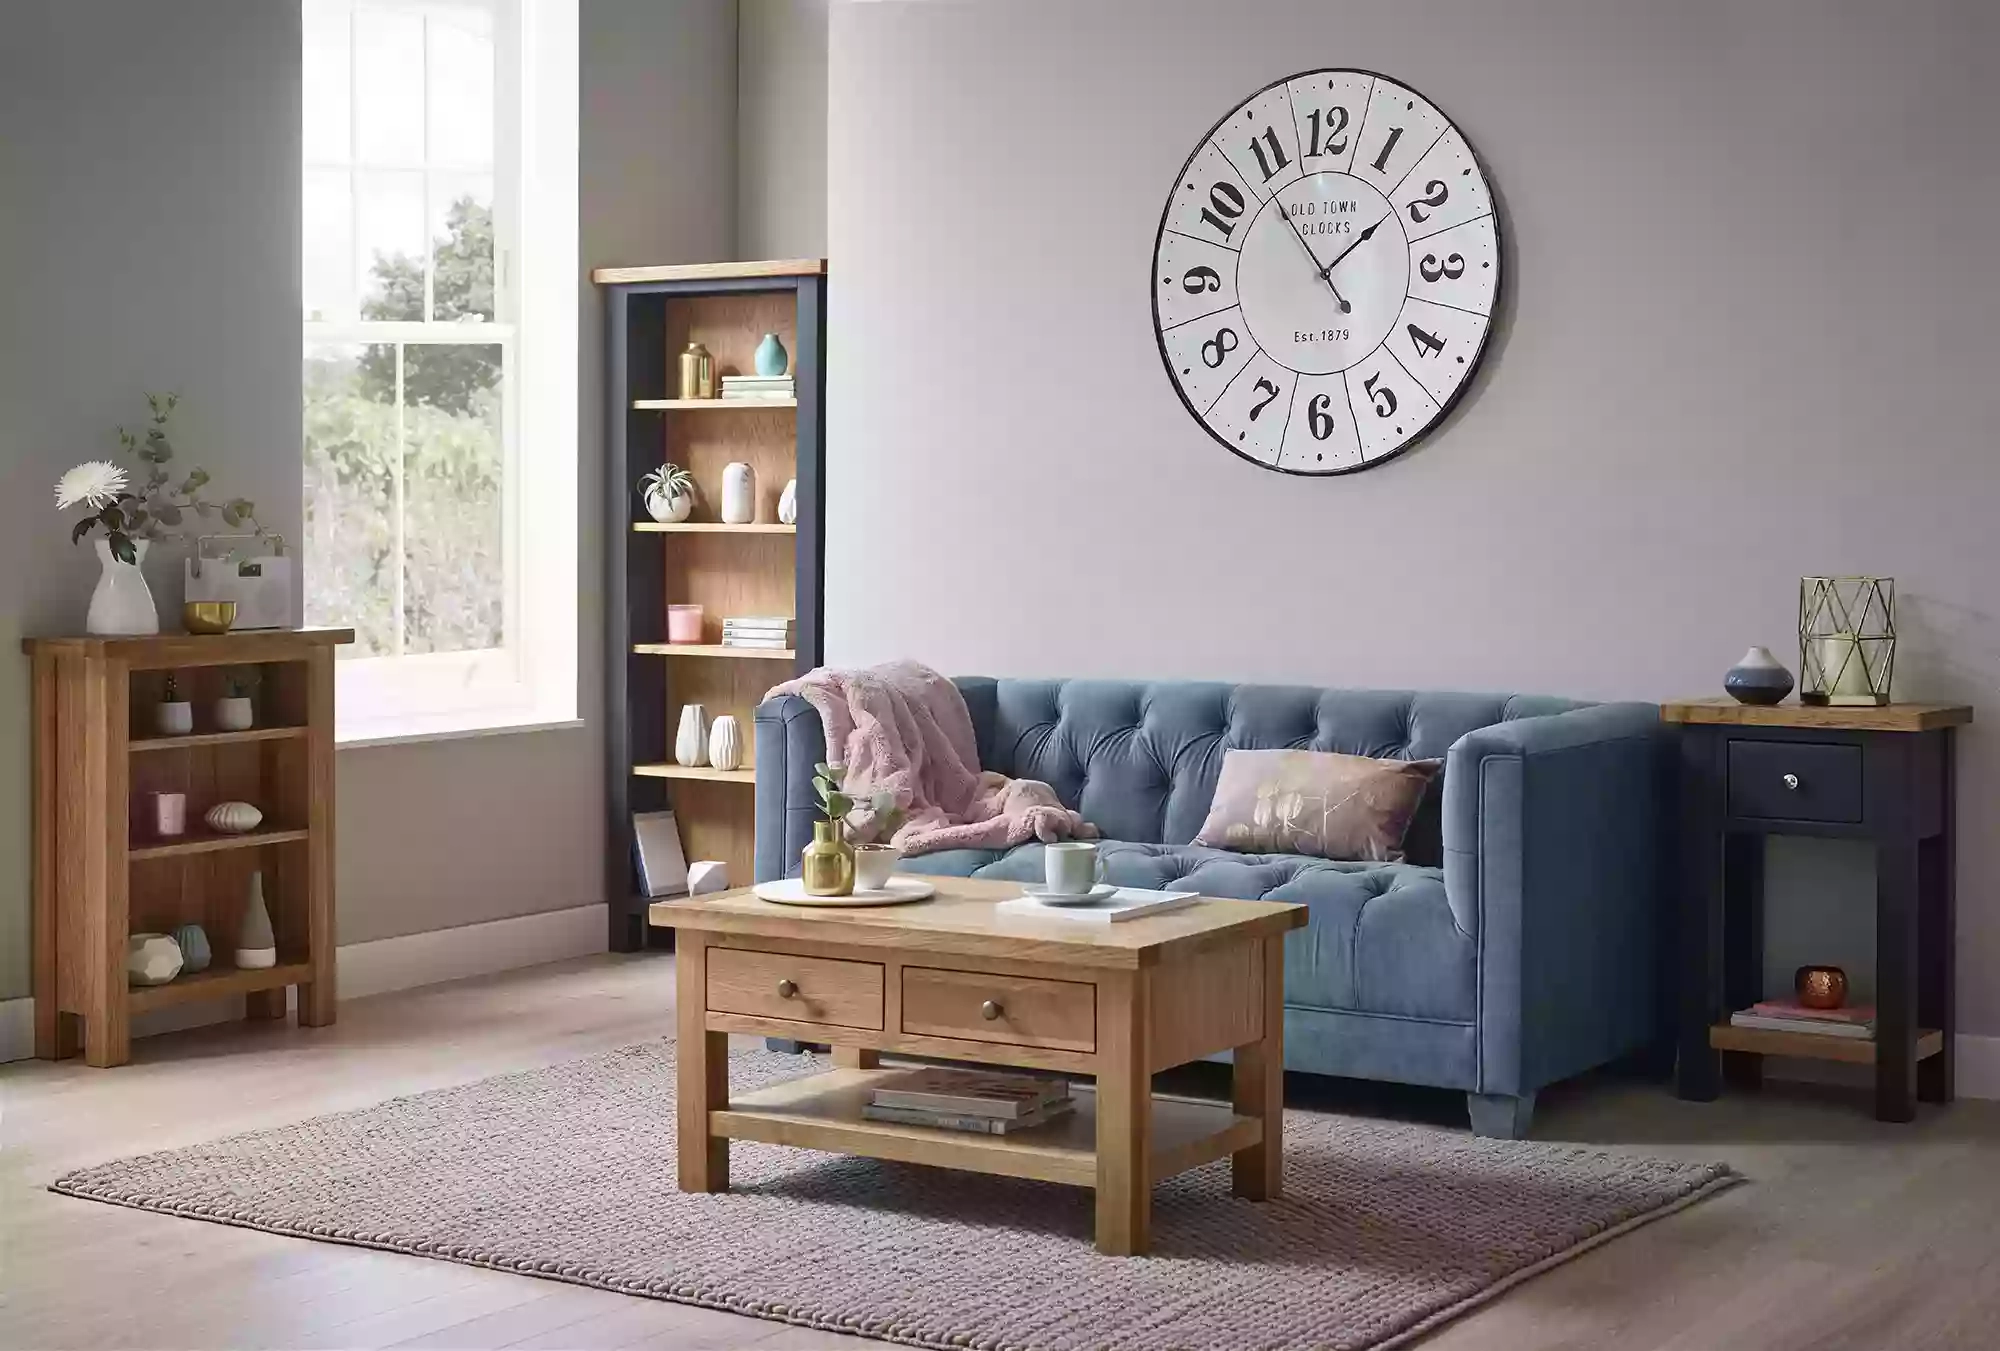 Shropshire Furniture